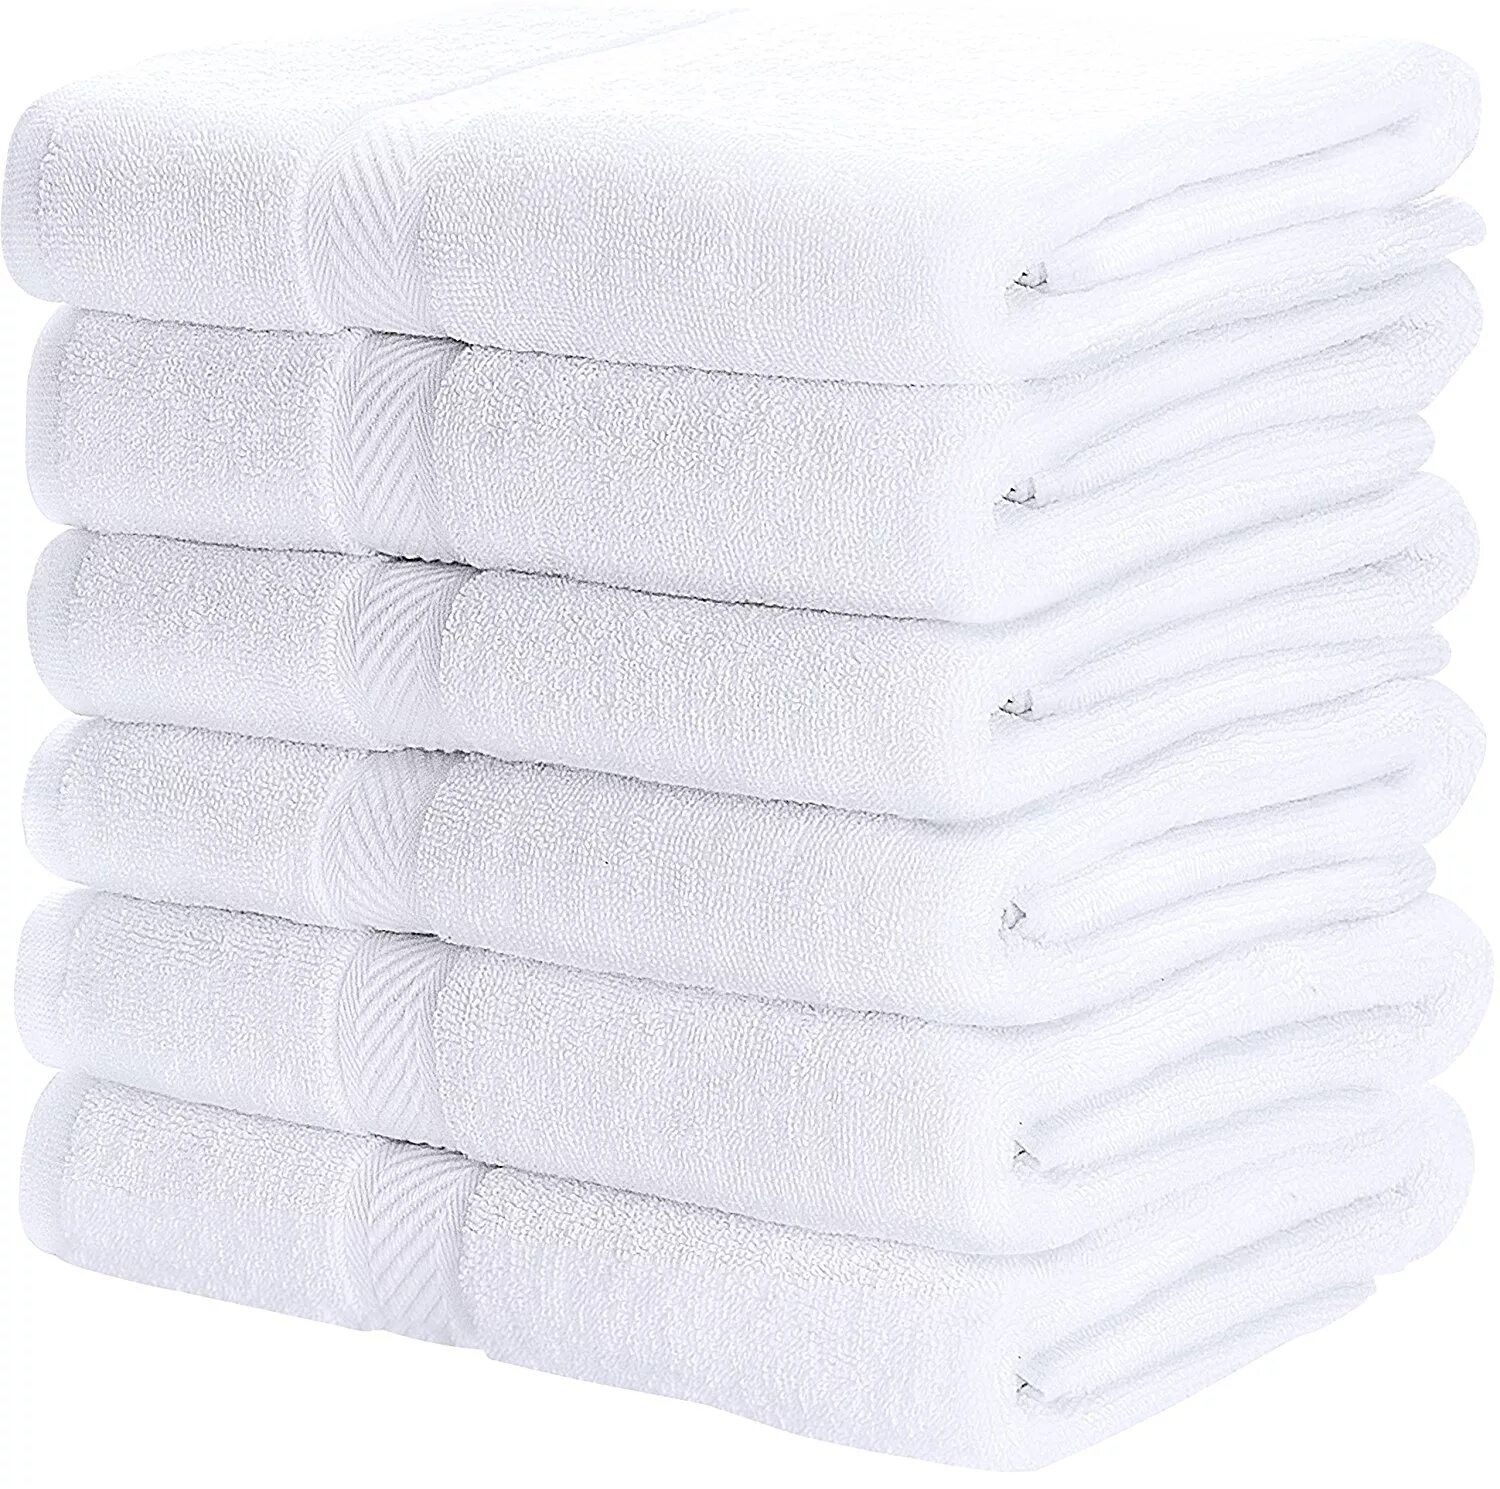 Белое банное полотенце. Полотенце Bath Towel. Полотенце 70x140, po0093. Белоснежные полотенца. Стопка белых полотенец.